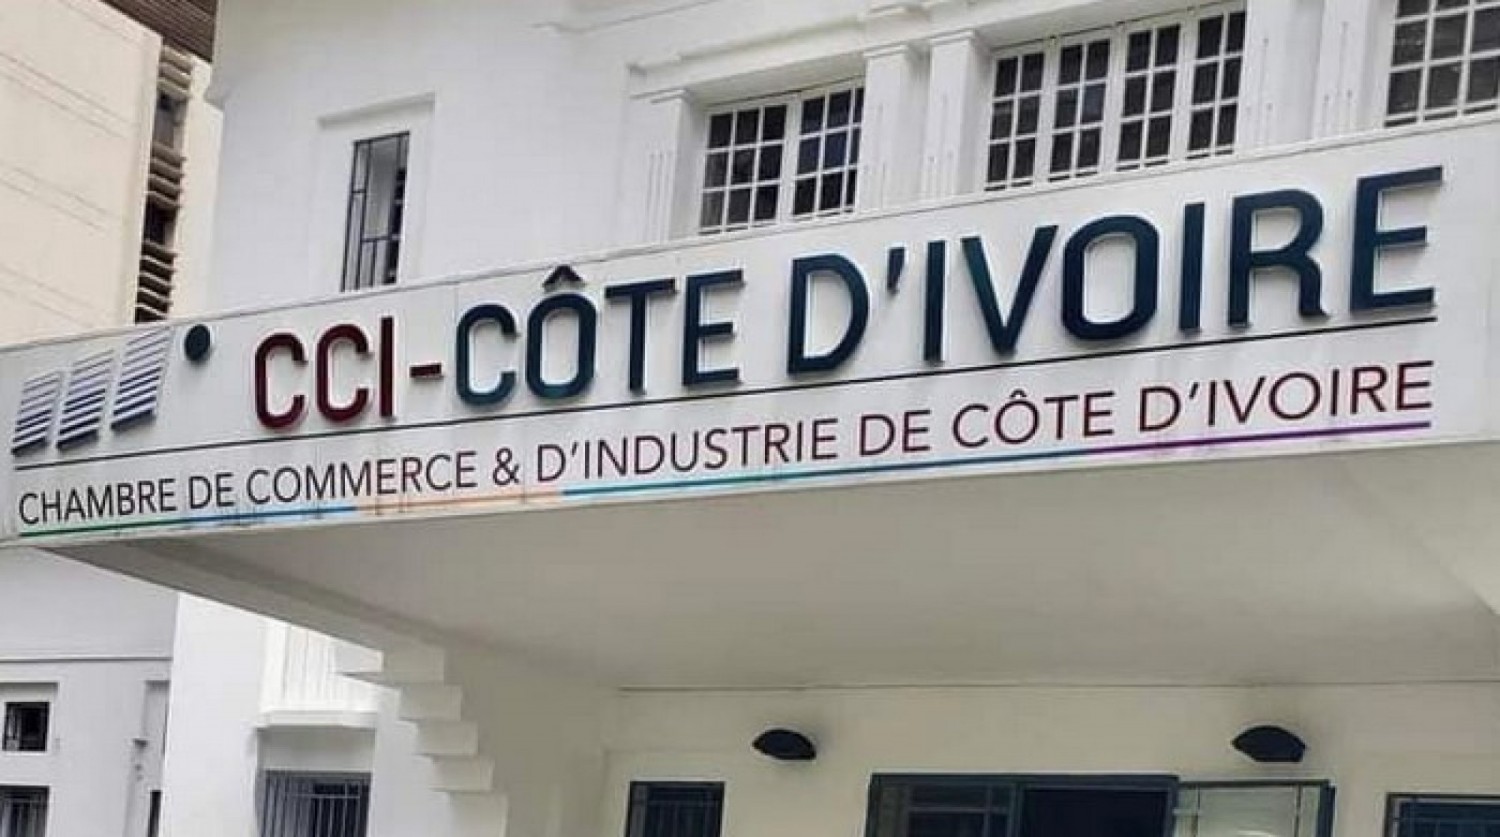 Côte d'Ivoire : Chambre de Commerce et d'Industrie d'Abidjan, 3 couples de candidats briguent la présidence et la vice-présidence de l'institution